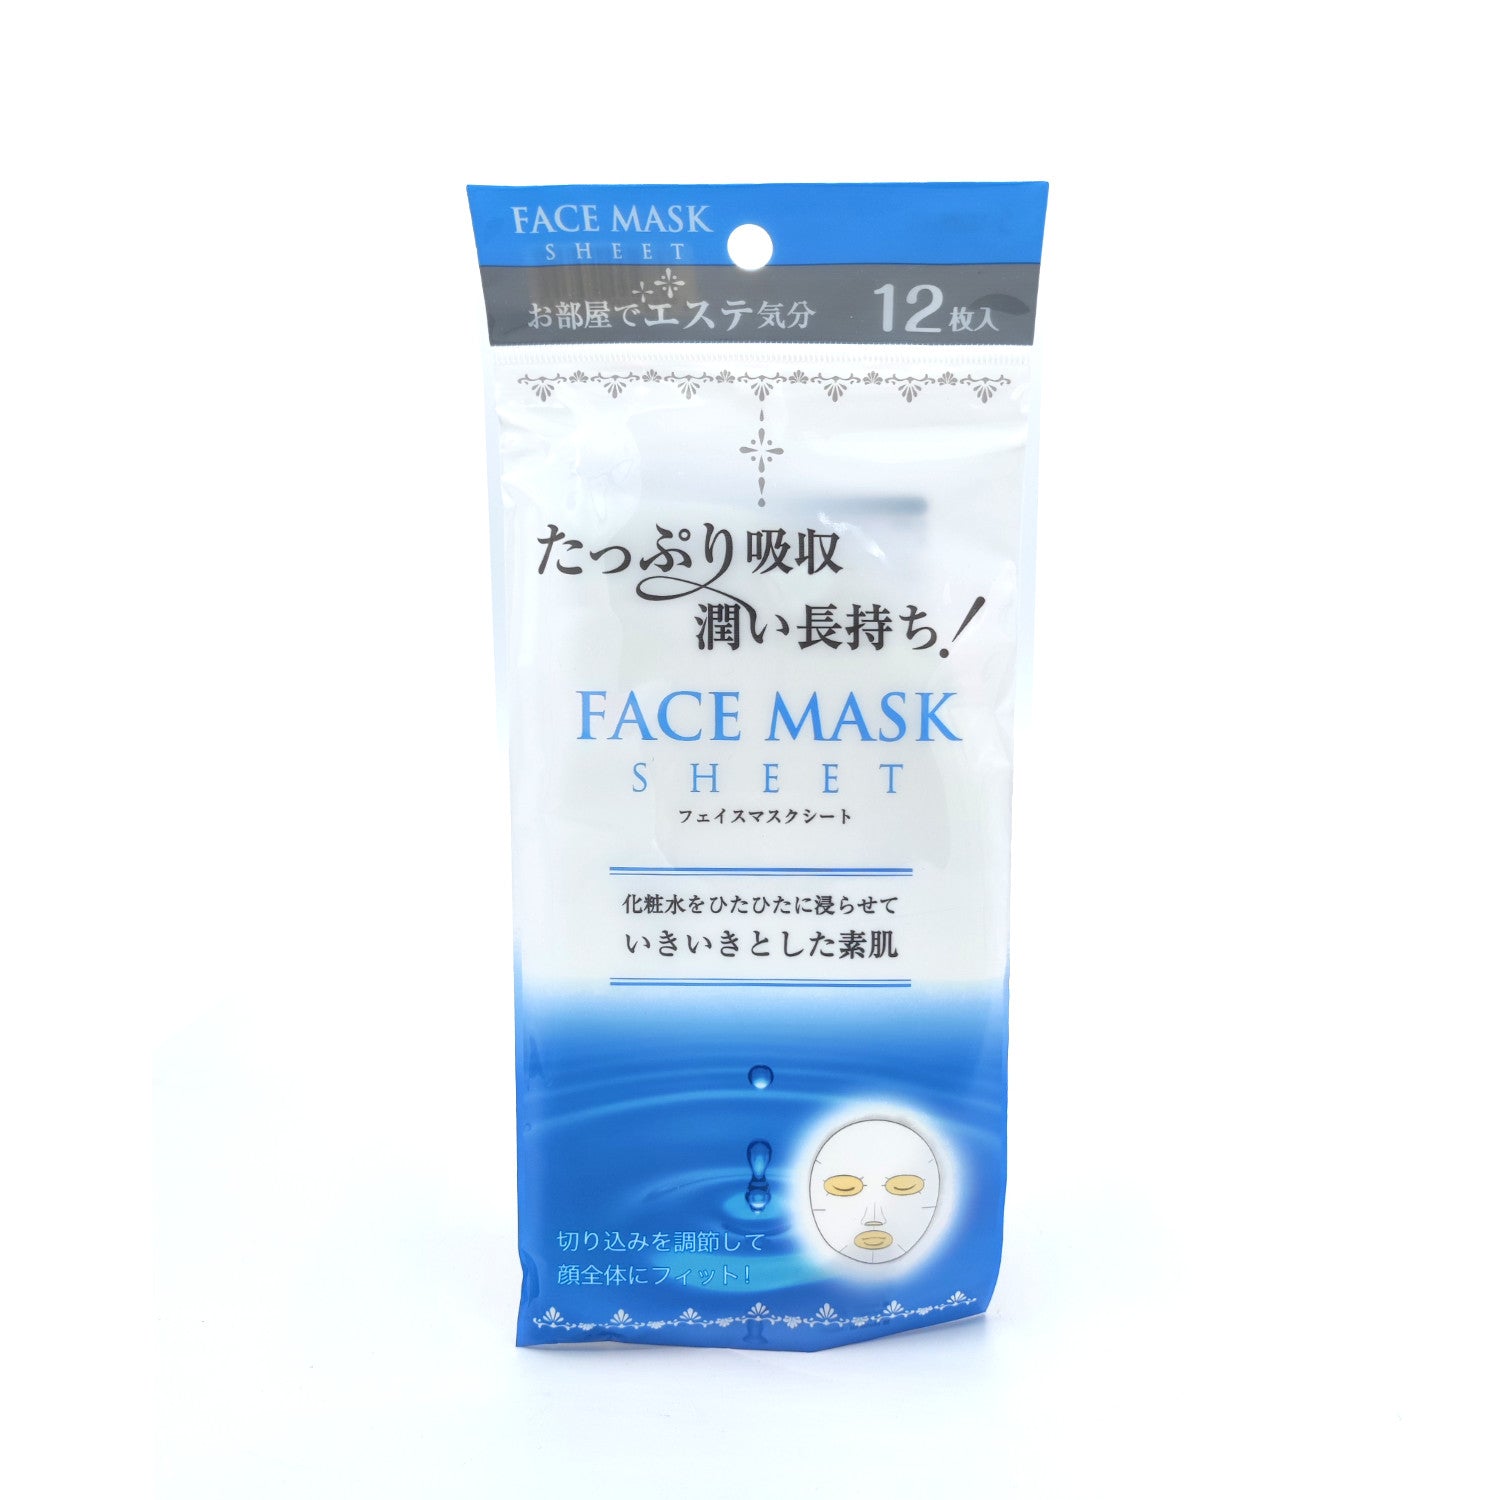 Face Mask Sheet 12pcs